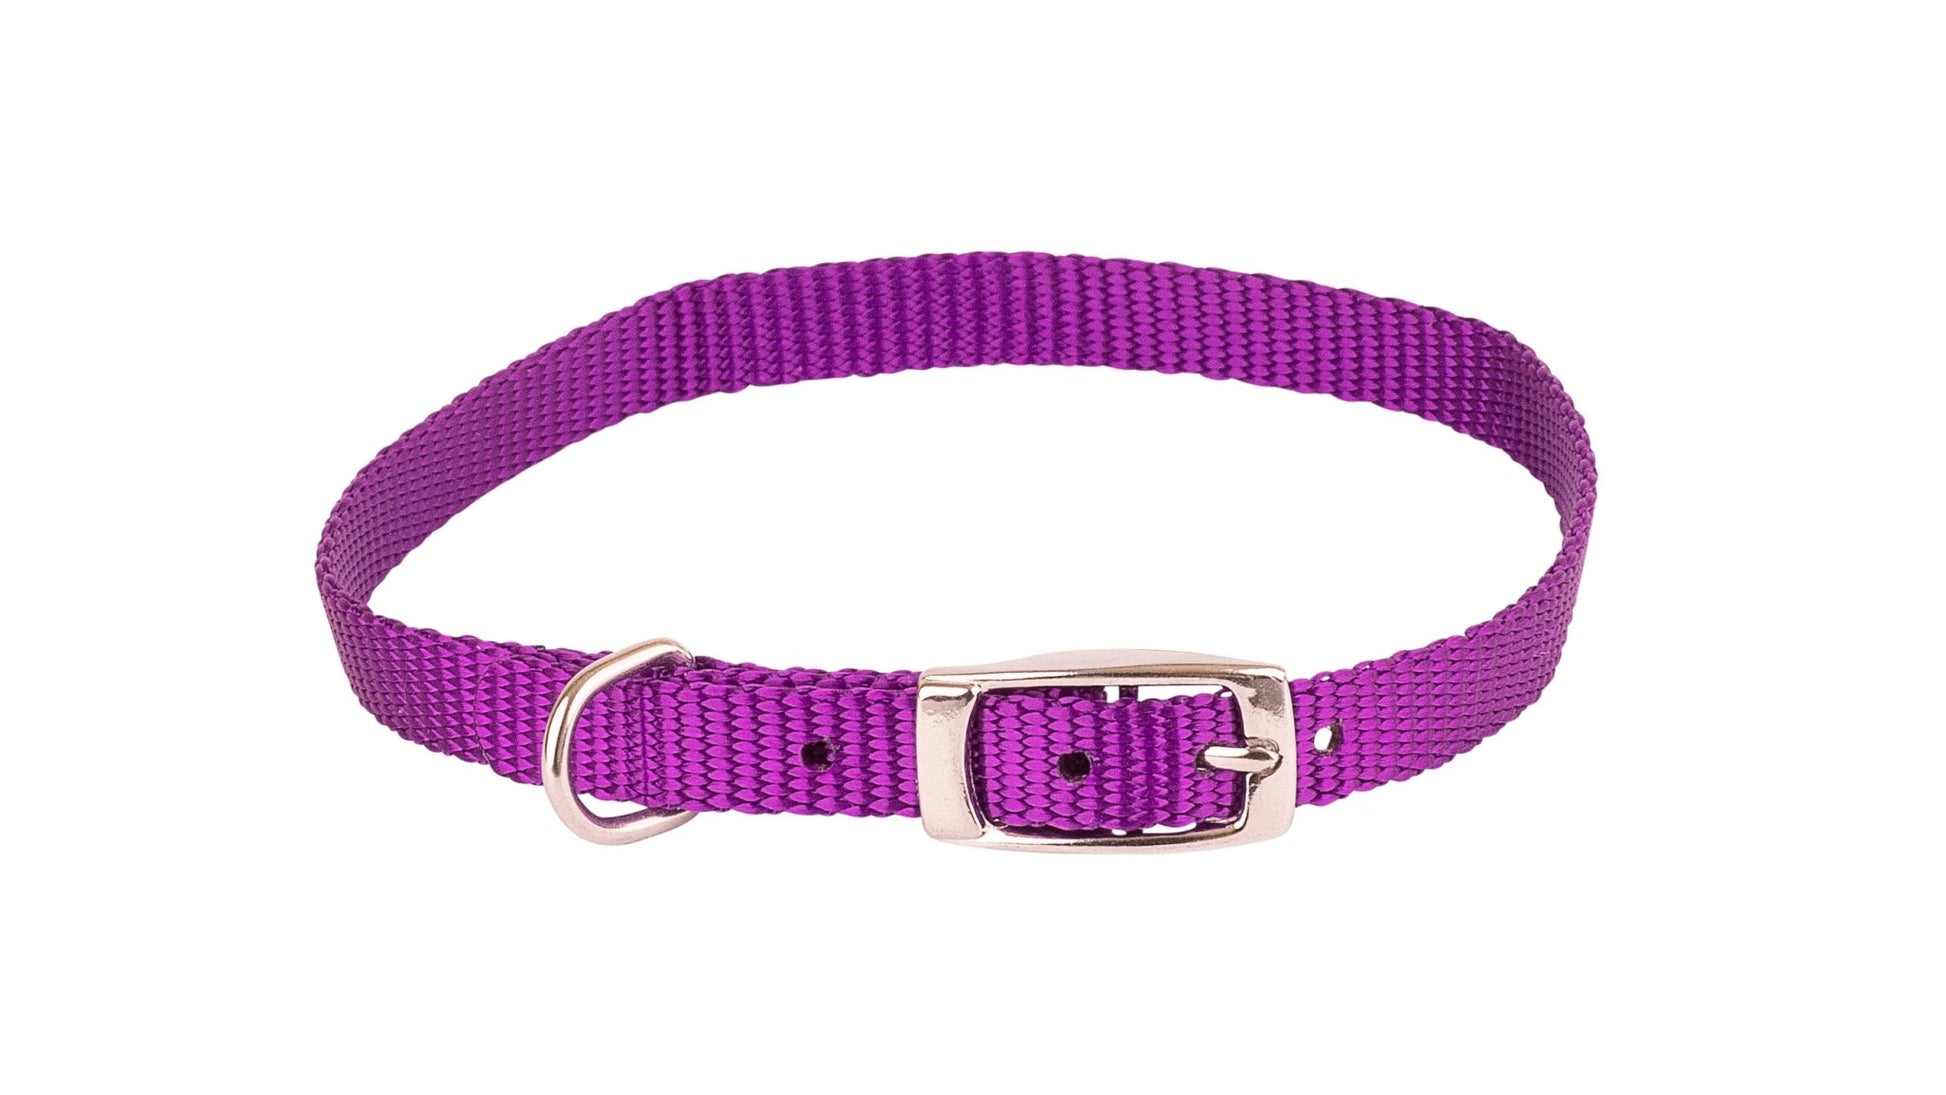 Beau Pets Collar Single Layer Purple - Woonona Petfood & Produce